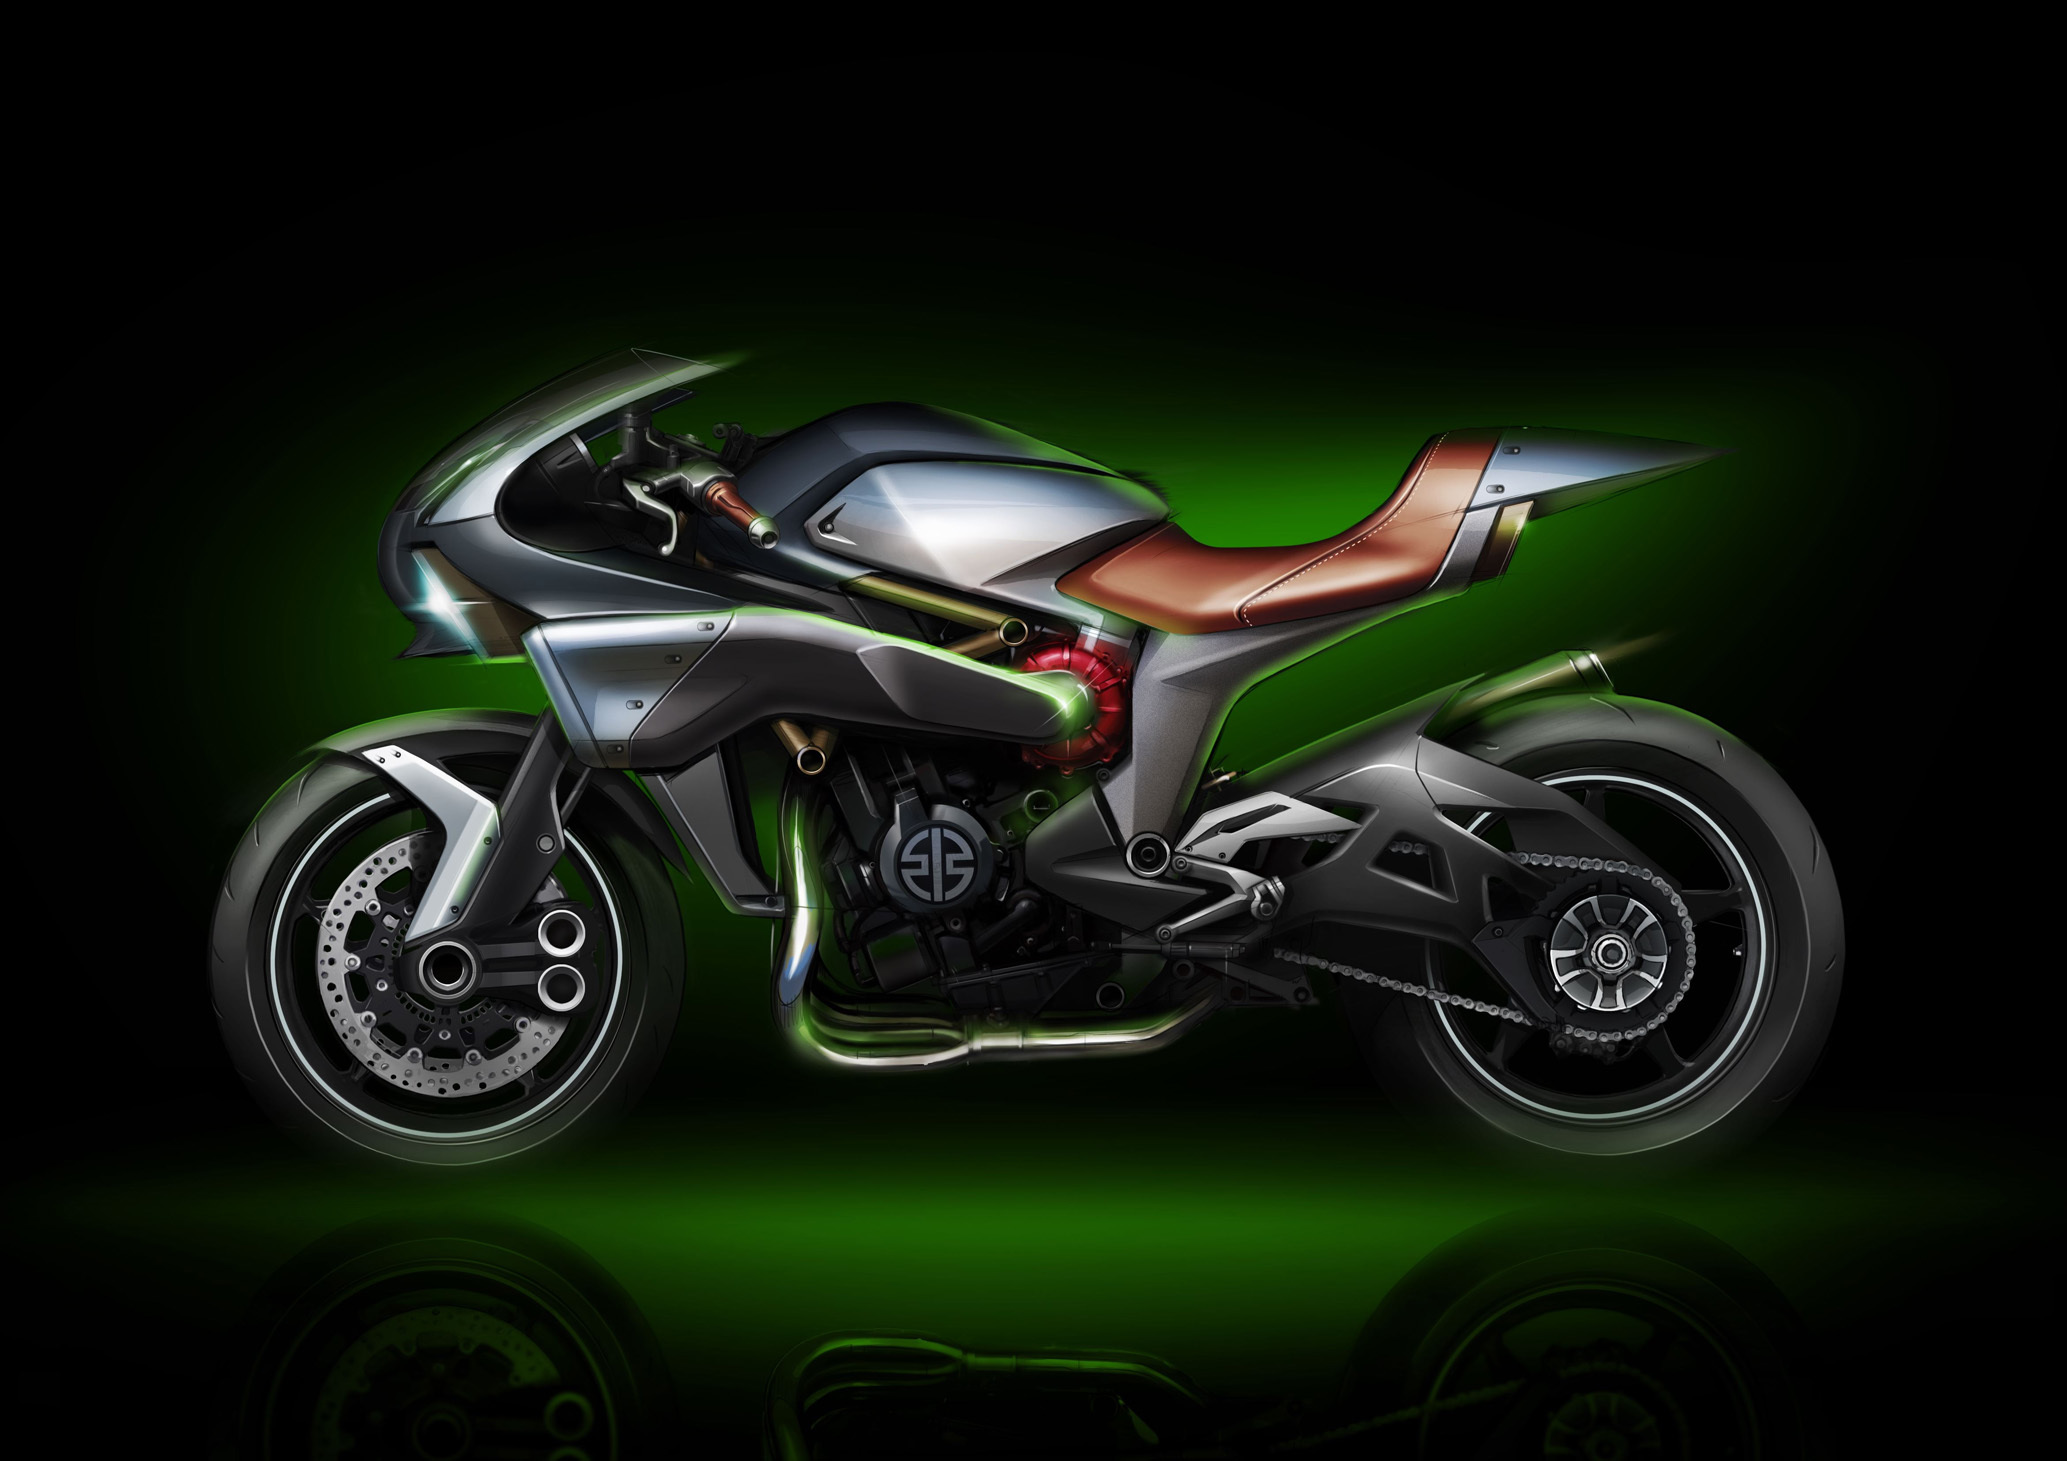 2015 Kawasaki SC 01 'Spirit Charger' concept